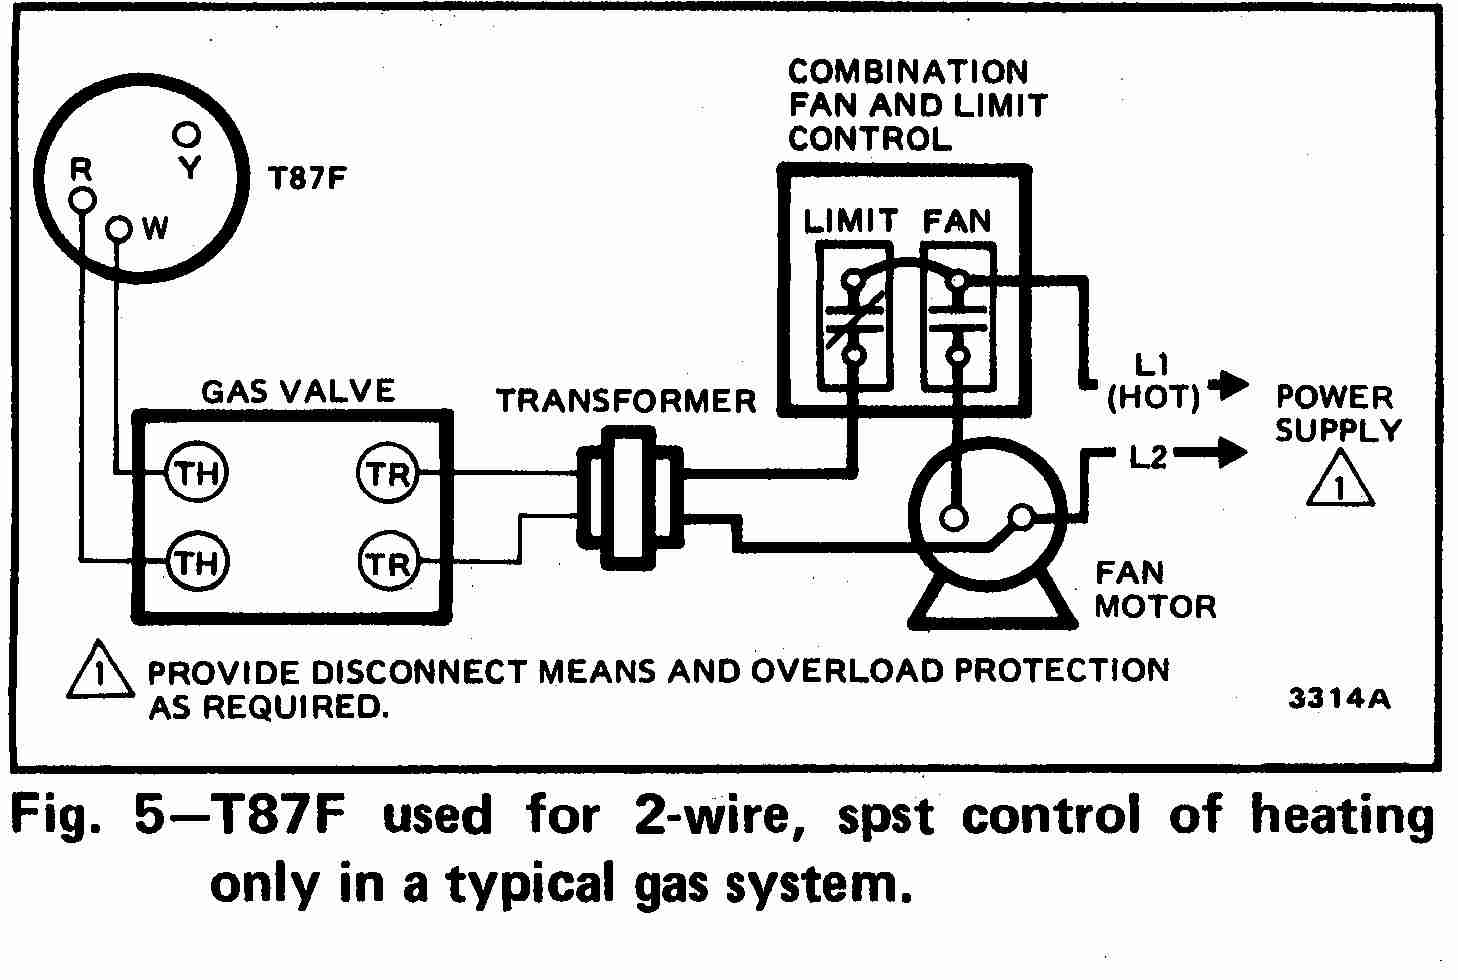 Modine Unit Heater Wiring Diagram | Wiring Diagram - Modine Gas Heater Wiring Diagram